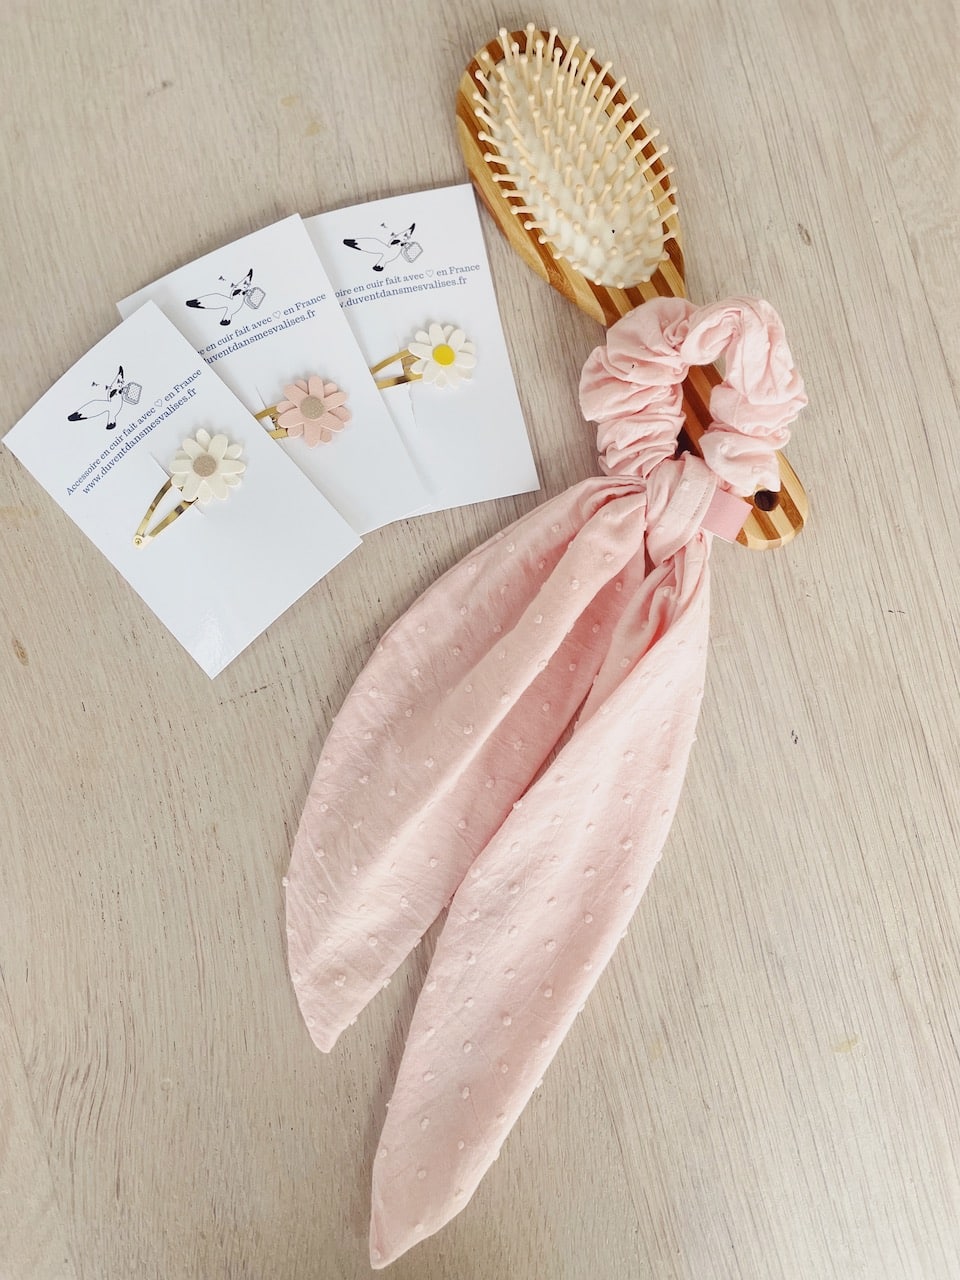 chouchou foulard avec noeud amovible en coton plumetis accessoire cheveux mariage et cérémonie © du vent dans mes valises rose blush